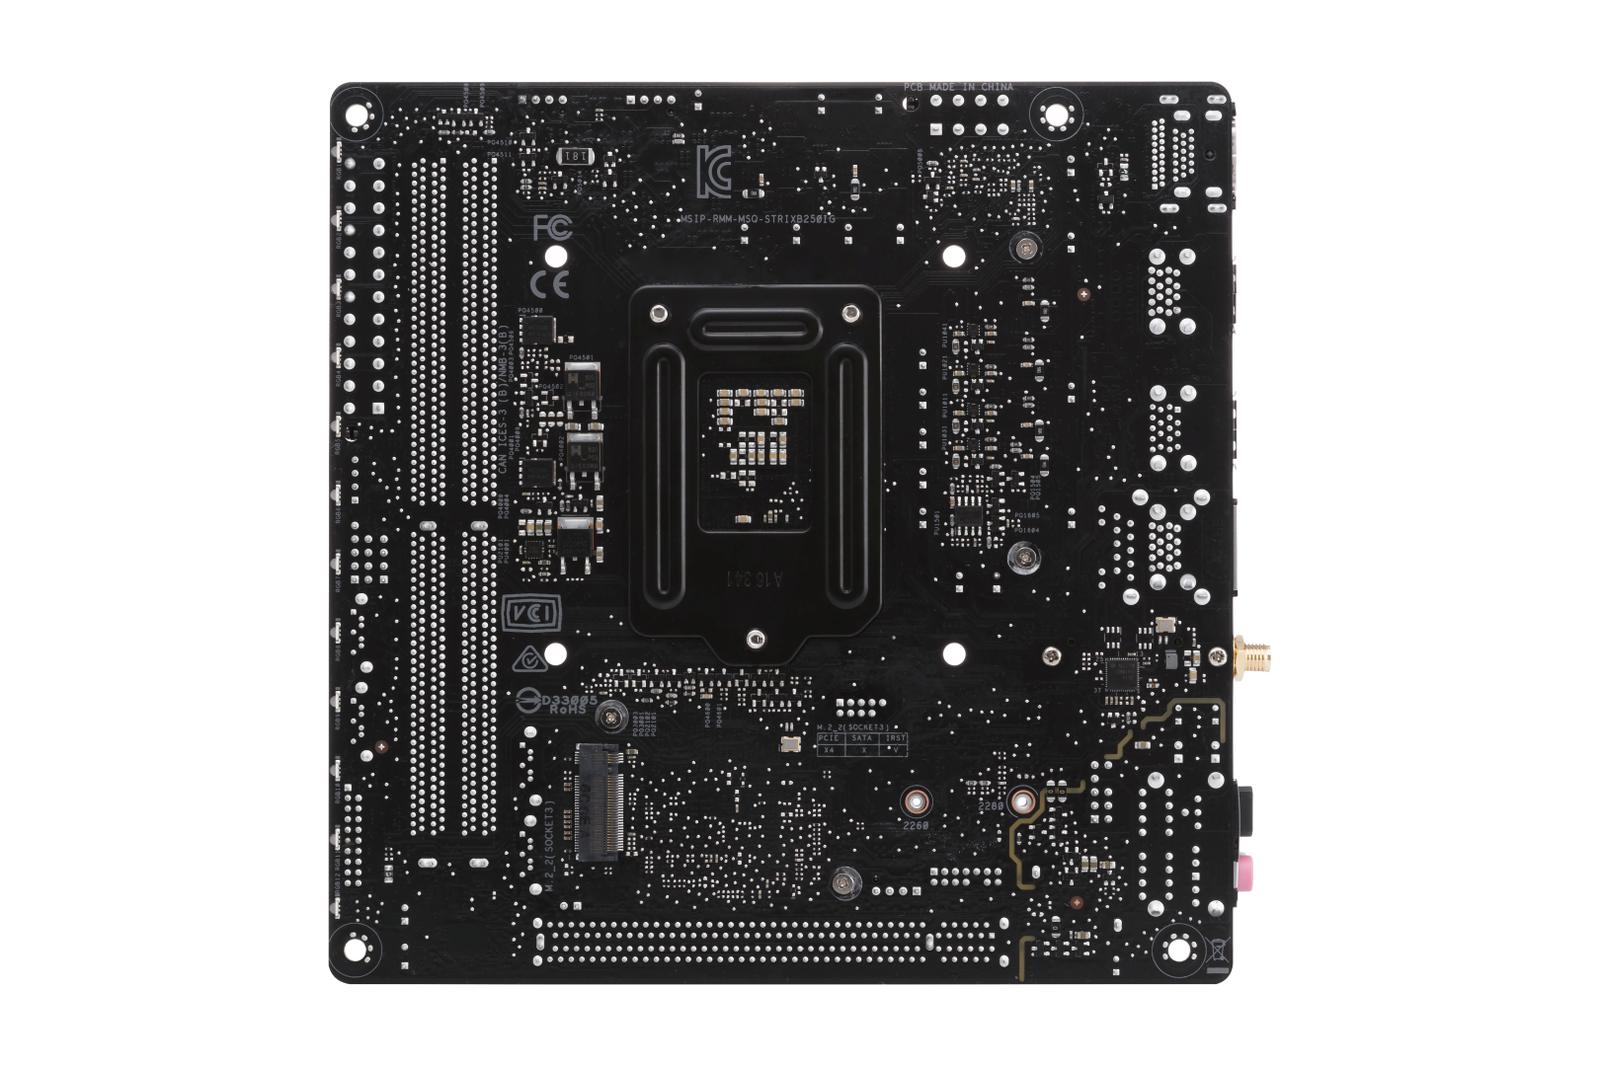 Asus ROG STRIX B250I GAMING Mini ITX LGA 1151